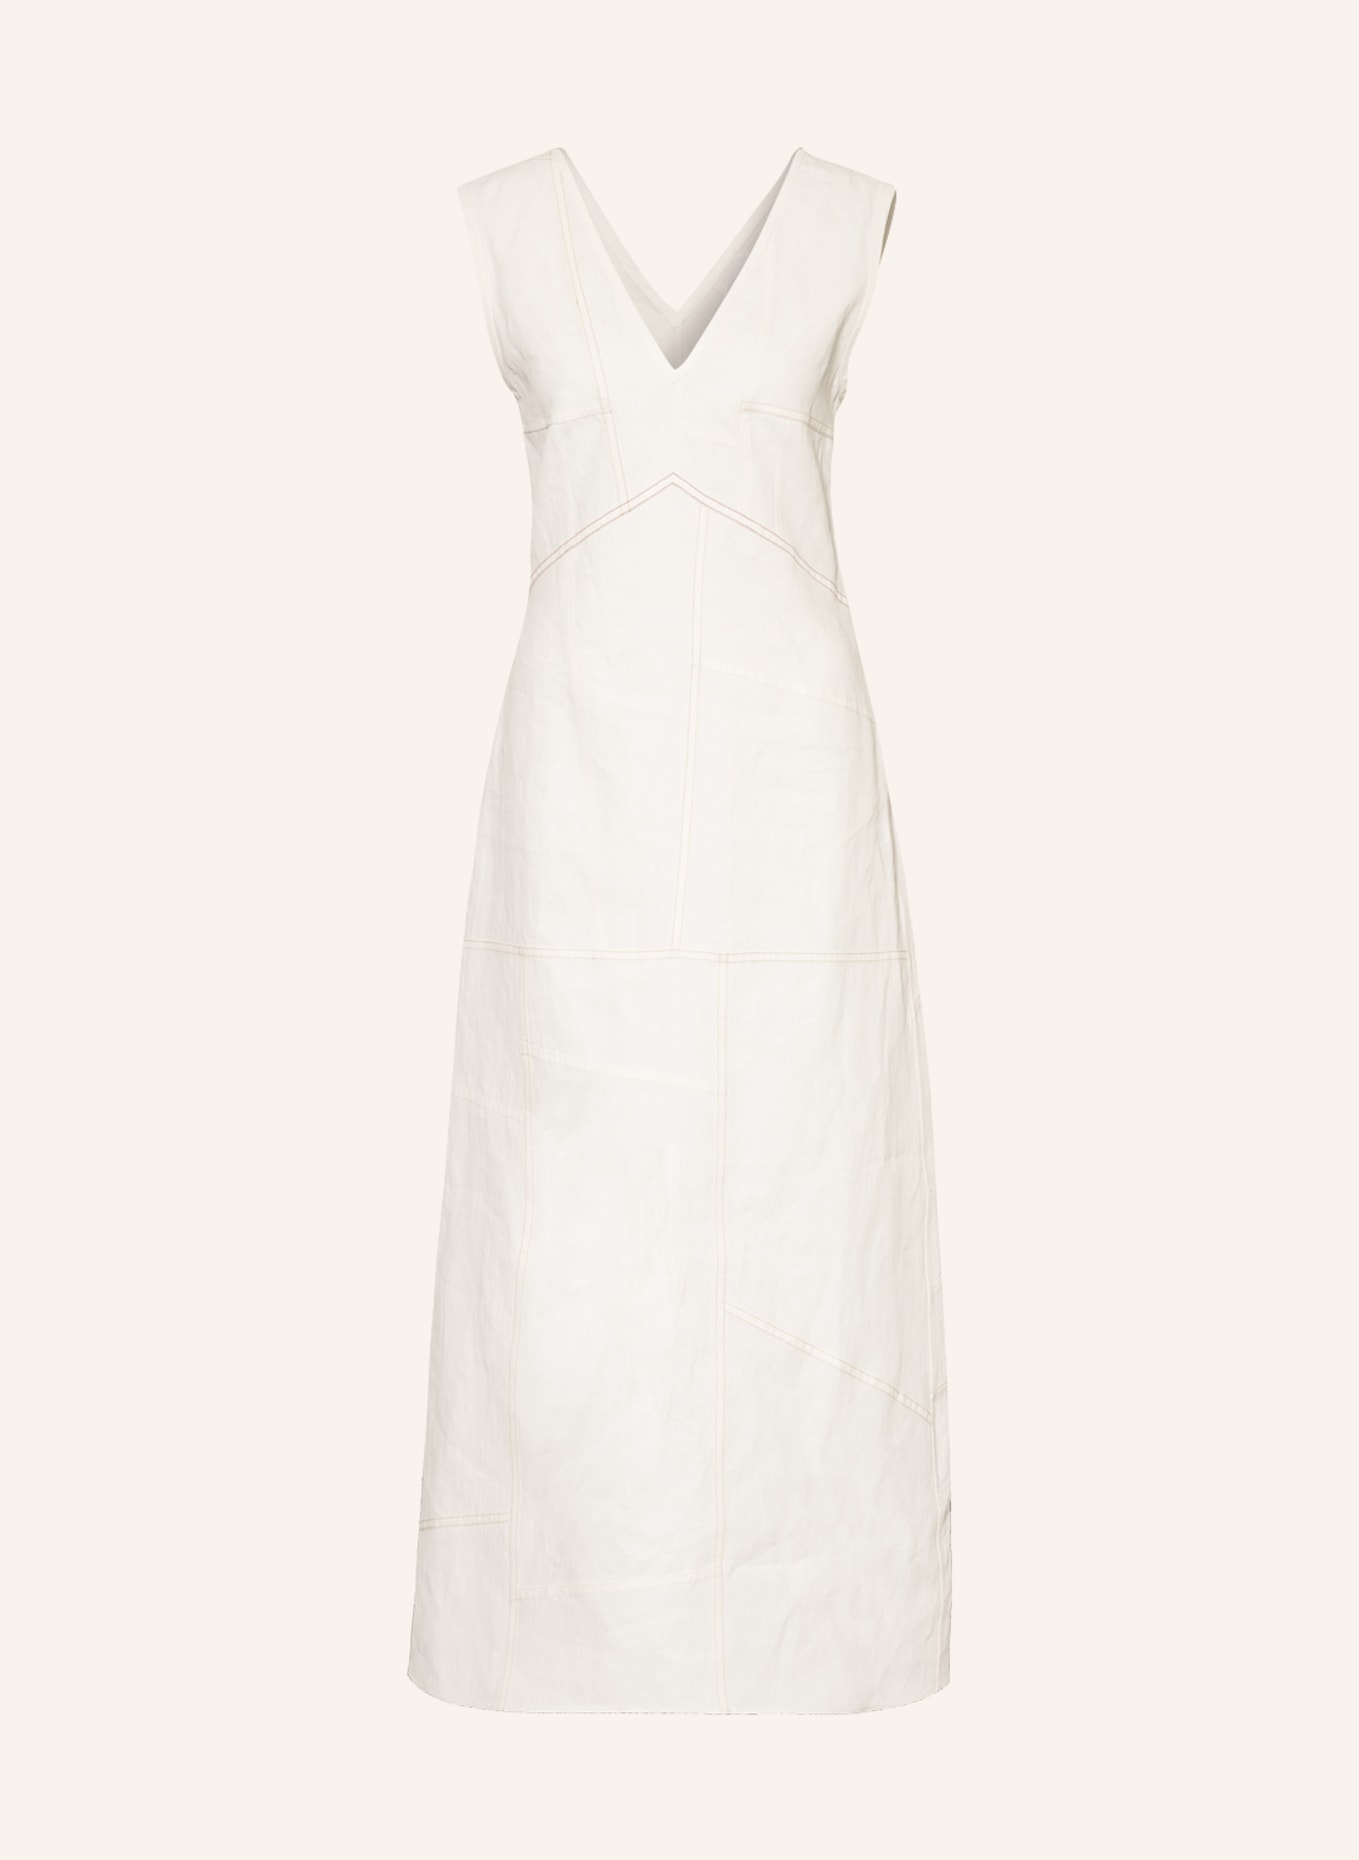 JIL SANDER Linen dress, Color: ECRU (Image 1)